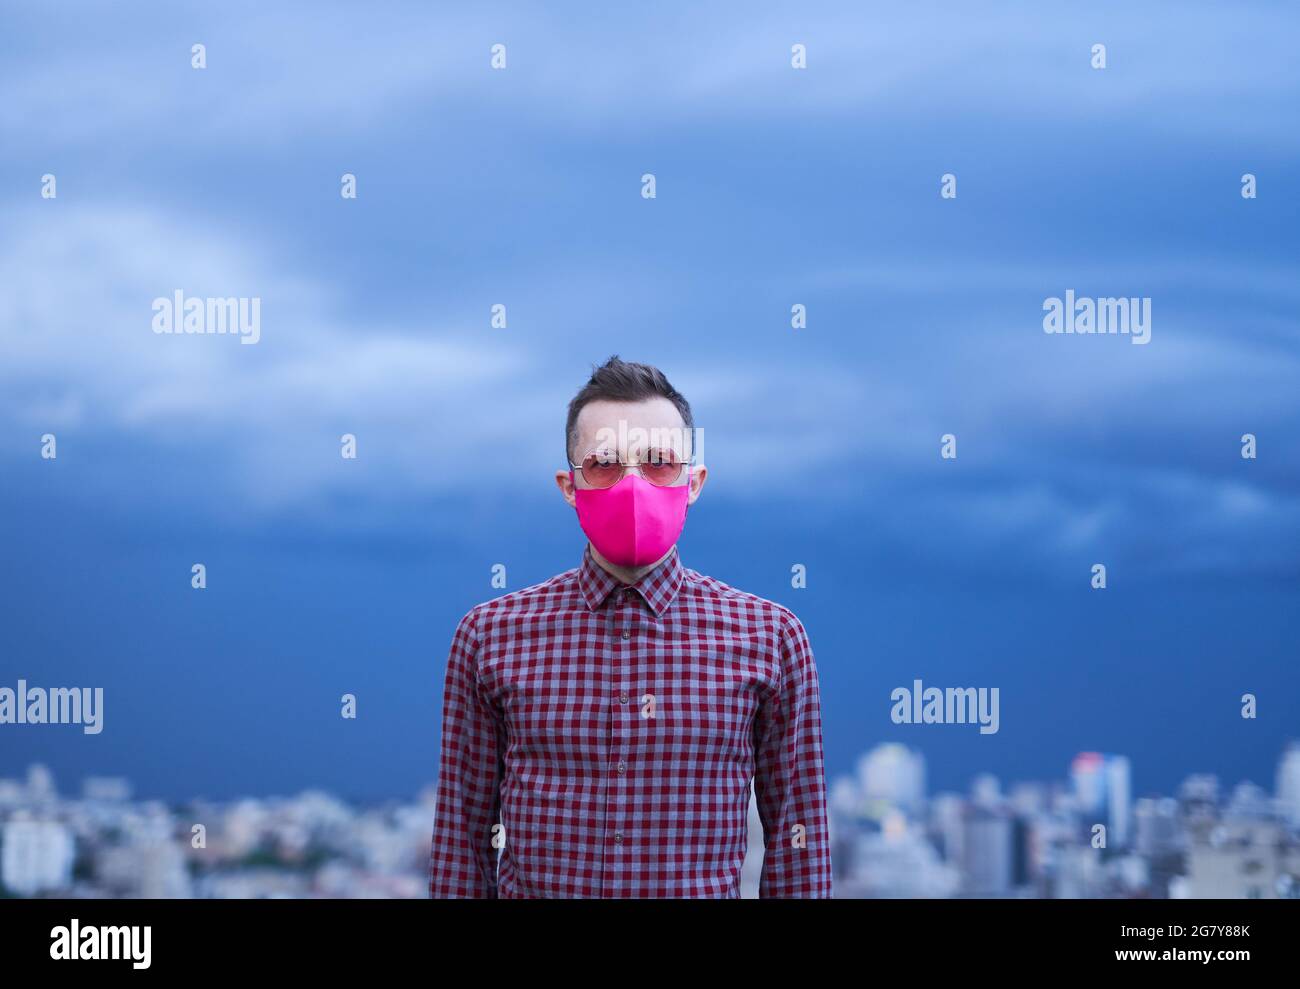 Schöne kaukasische Homosexuell in rosa schützende medizinische Gesichtsmaske suchen gerade in der Kamera. Männliche Person Porträt mit regnerischem Wetter Hintergrund und städtische Skyline. LGBTQ-Themenkonzept. Hochwertiges iimage Stockfoto